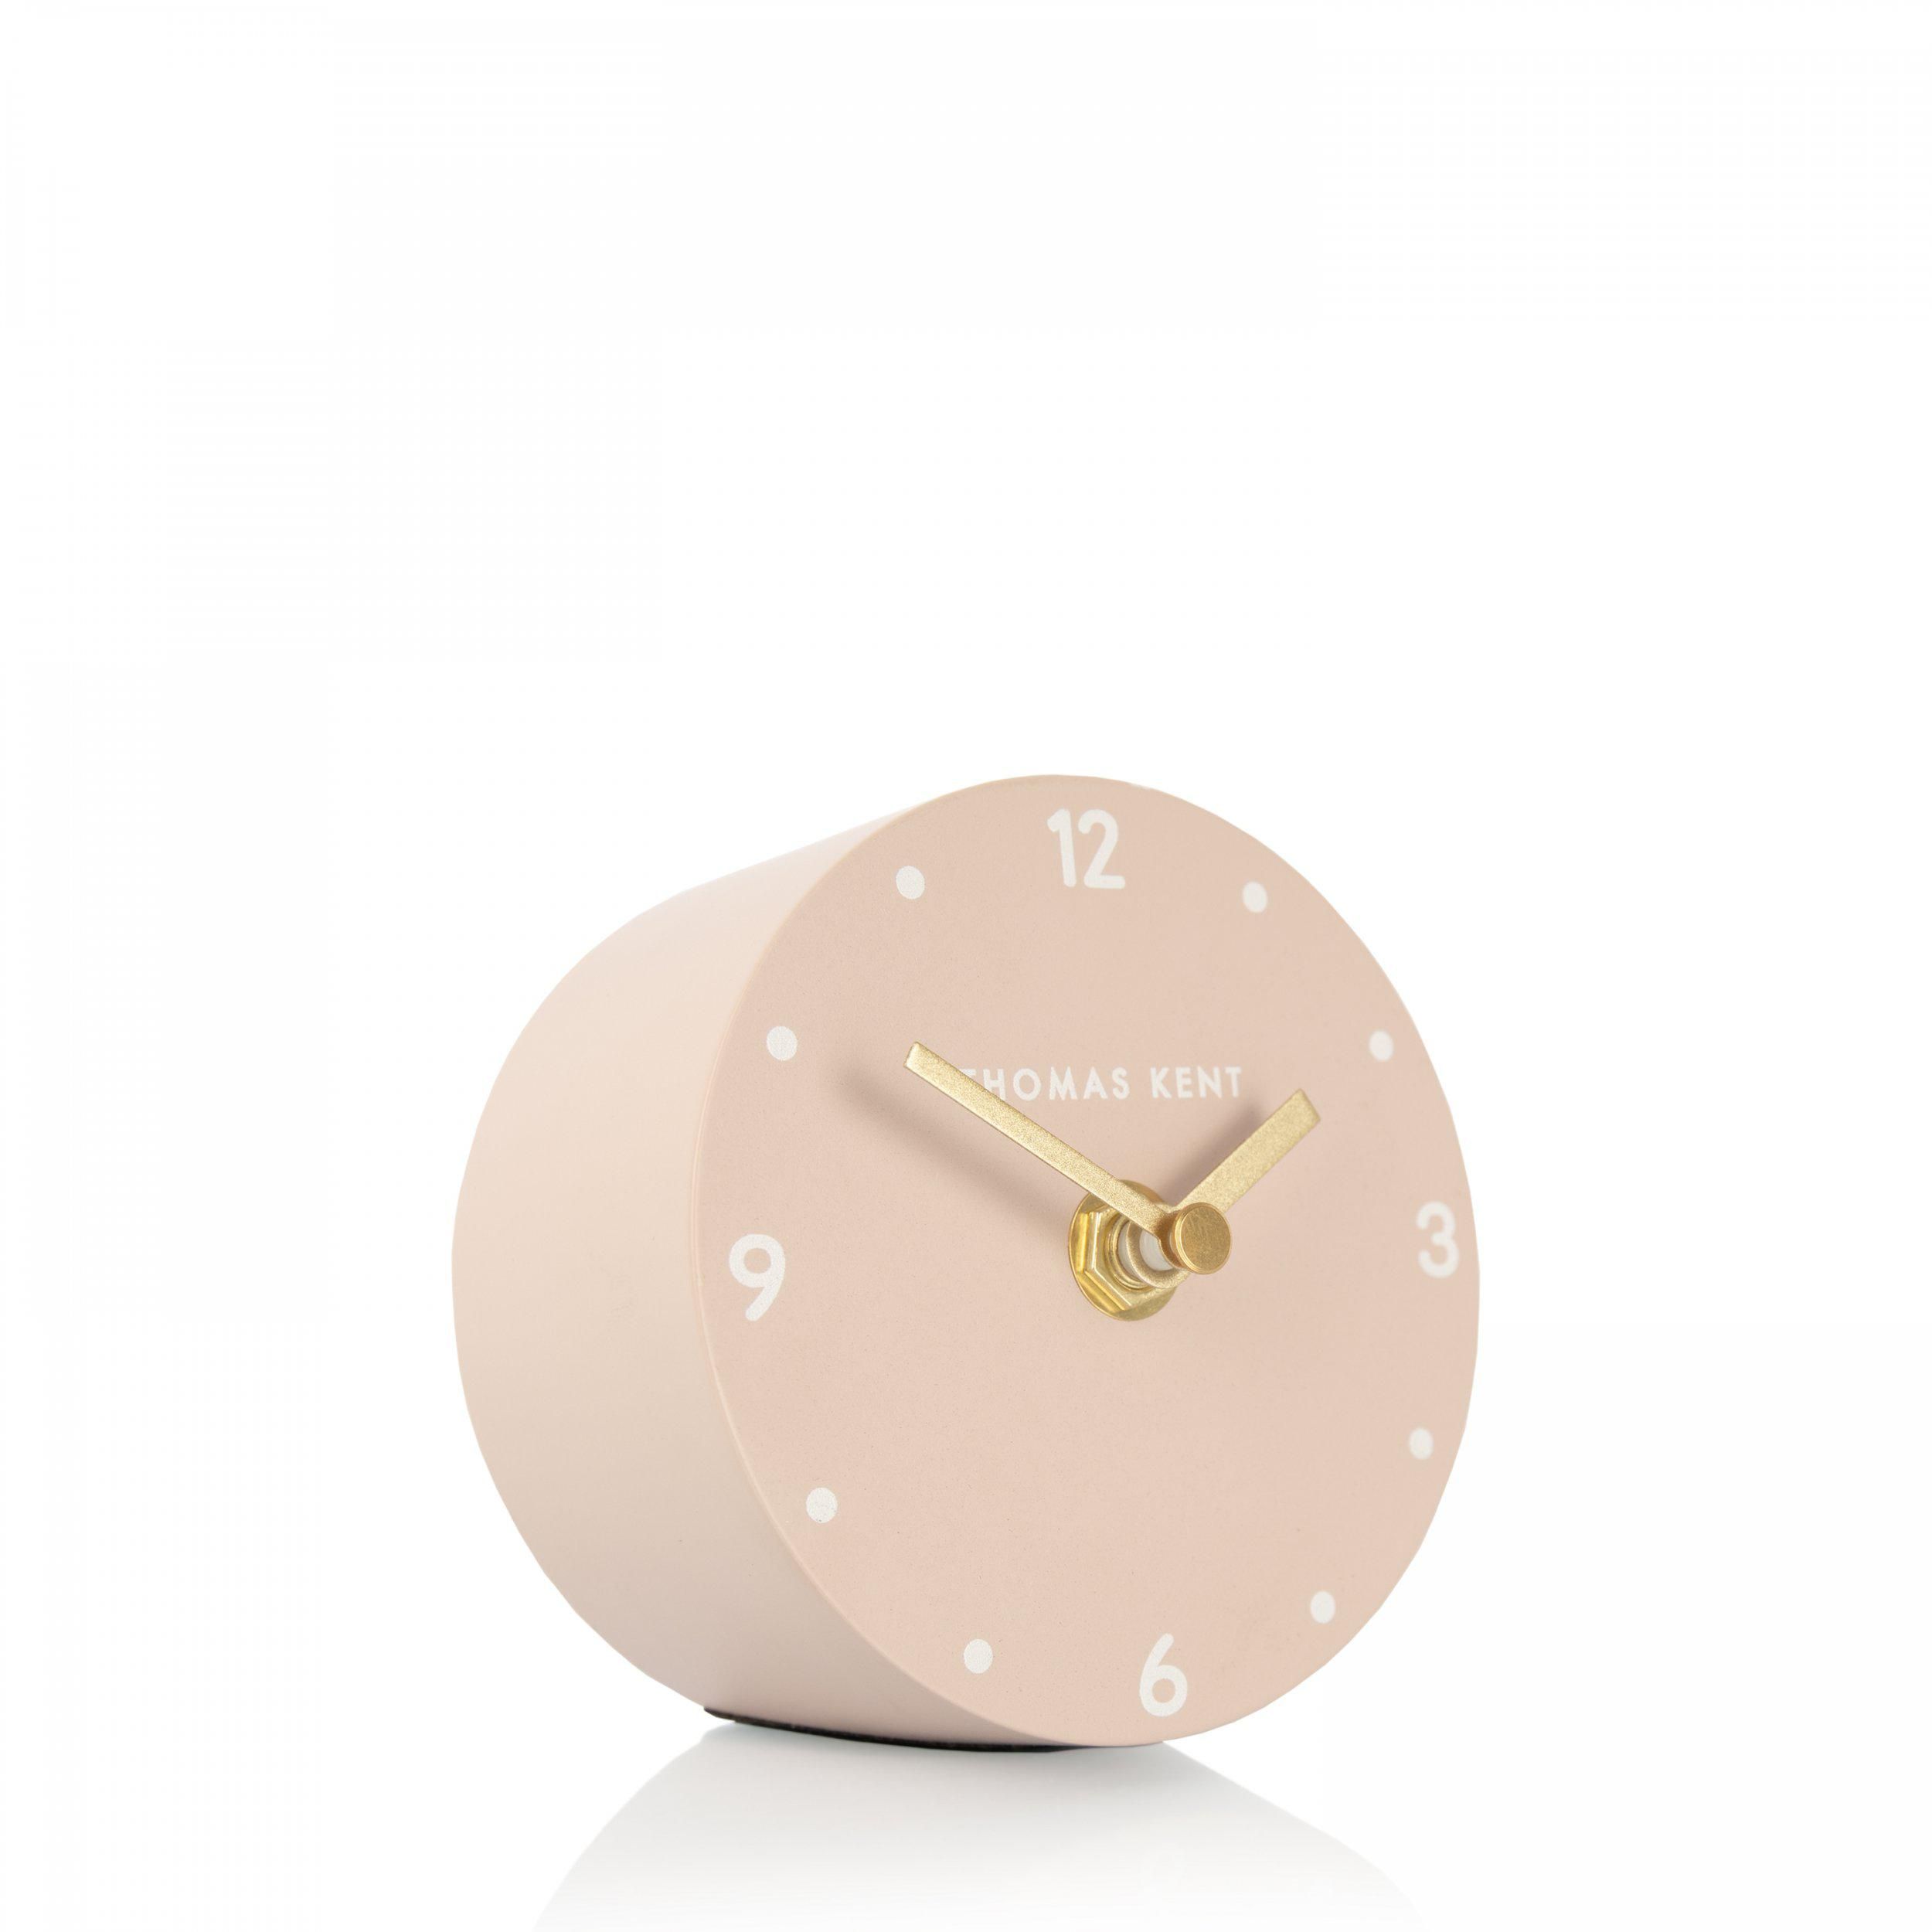 Portobello Rose Mantel Clock